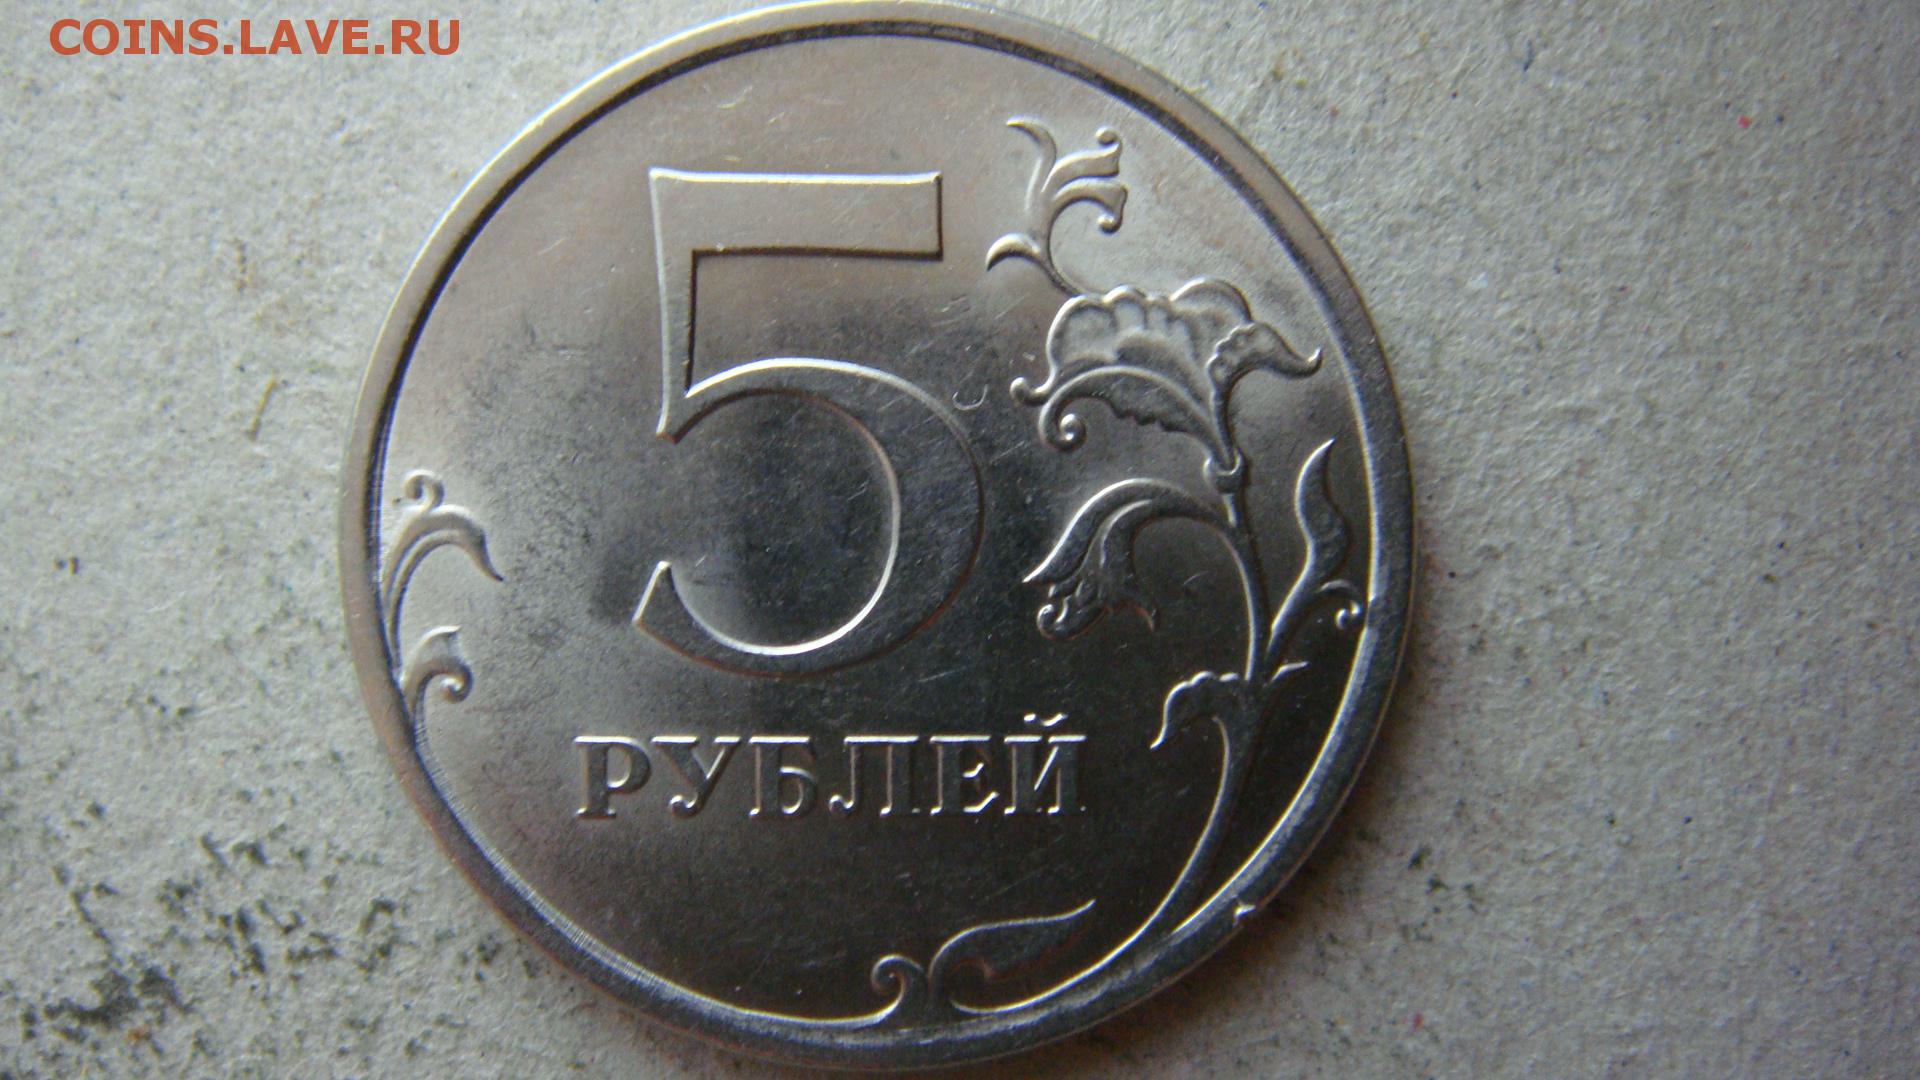 Монеты 5 рублей 2015. Монета 5 копеек 2003 СП. 5 Рублей 2008 года ММД. 2 Рубля 2010 года СПМД. 5 Копеек 1997 м шт.а1 шт.а2.